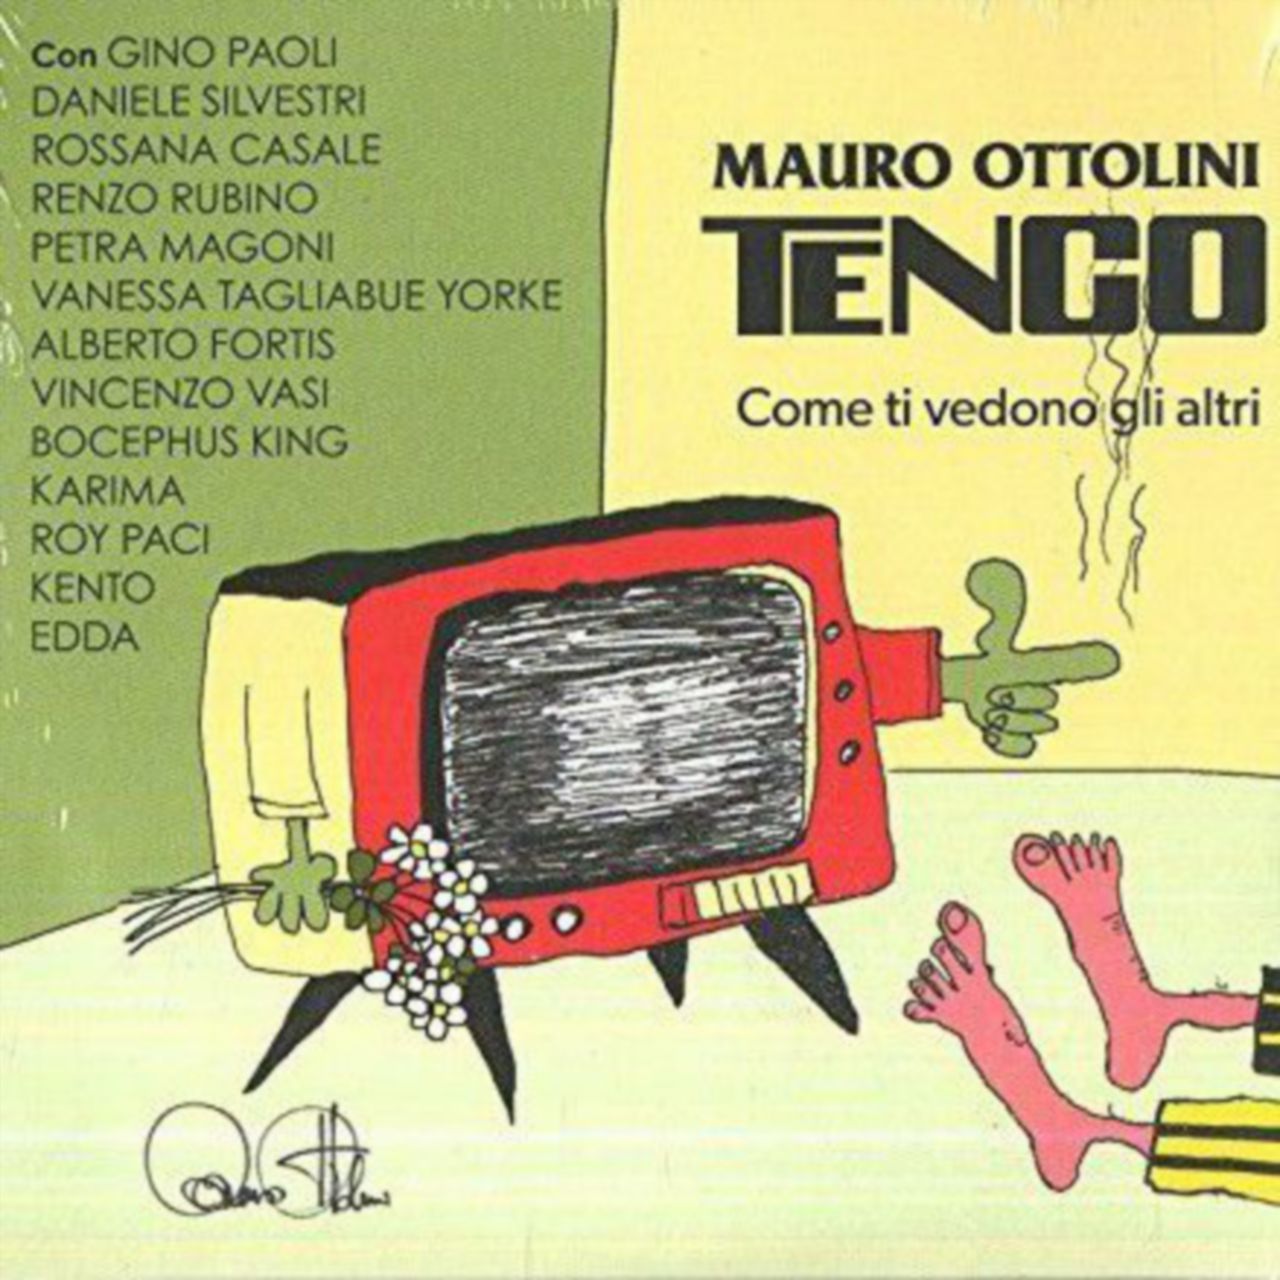 Copertina di Edda, Paoli, Paci e gli altri, reunion per Tenco